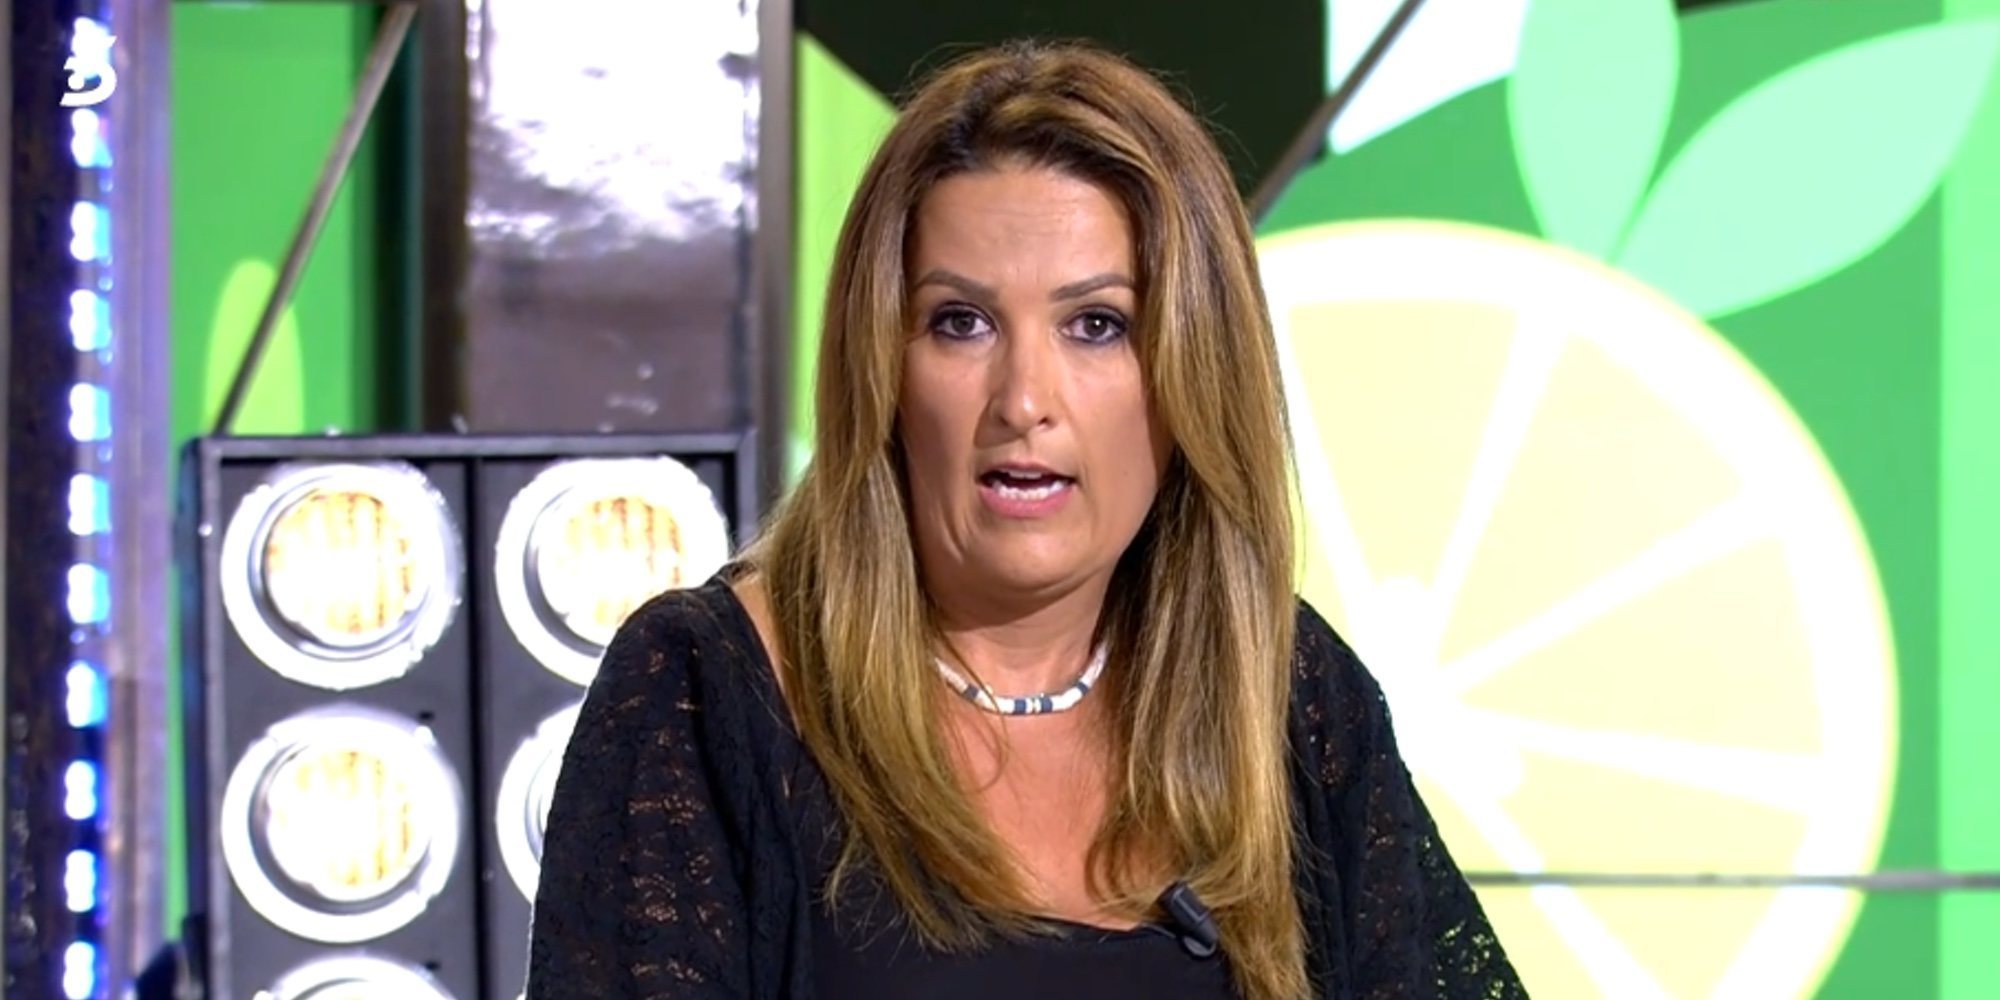 Laura Fa carga contra Terelu Campos: "Lo que quieres es tener cortesanos que te defiendan"